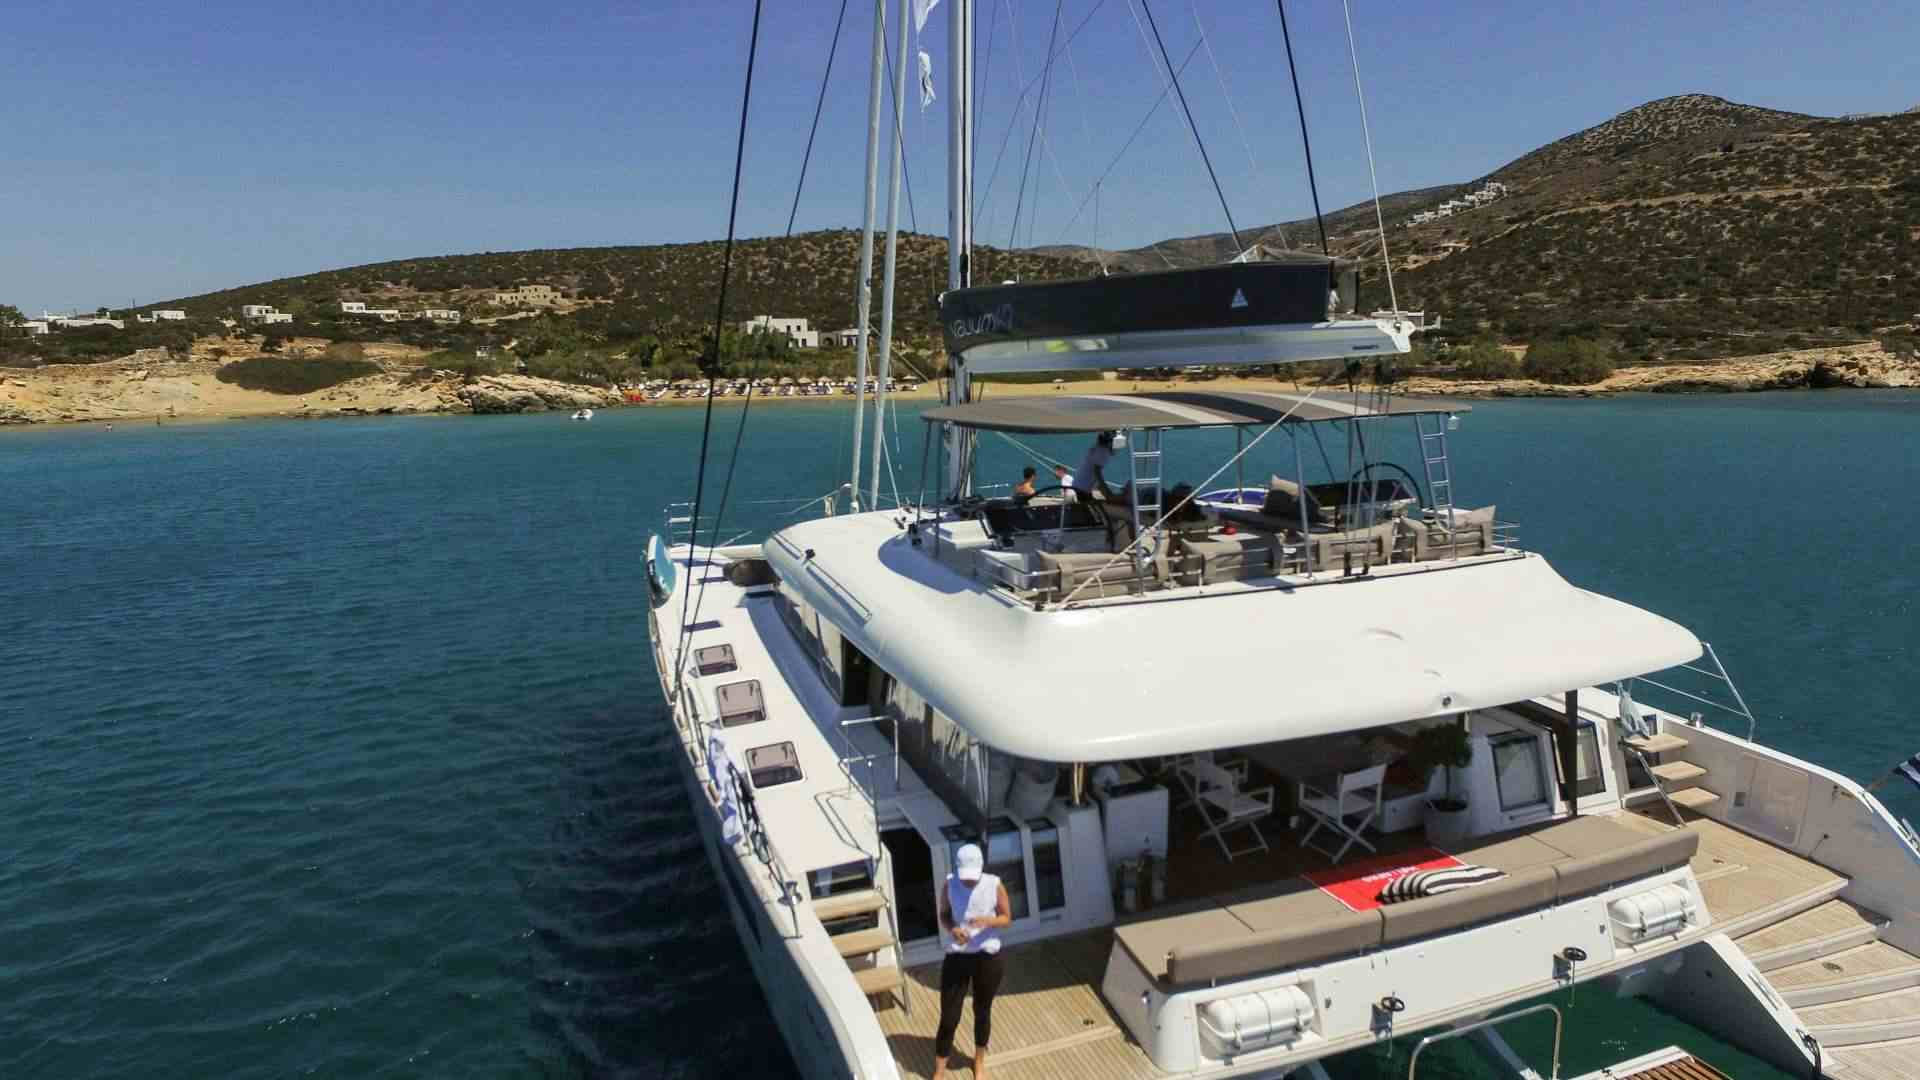 valium62 - Yacht Charter Marina di Montenero di Bisaccia & Boat hire in Greece 1